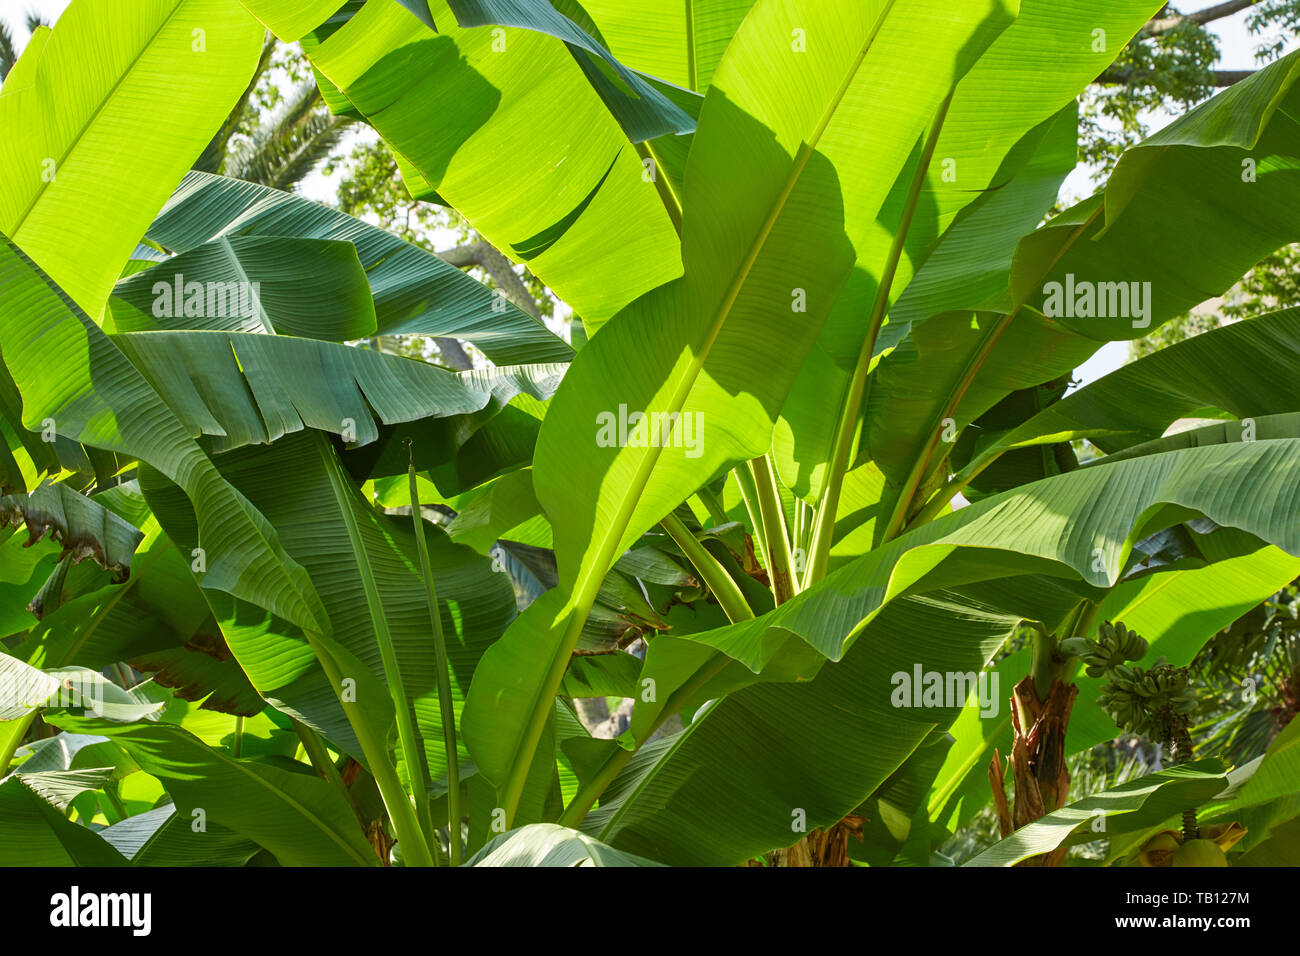 Bananenstaude, frische grüne Blätter Textur Hintergrund im Sonnenlicht Stockfoto